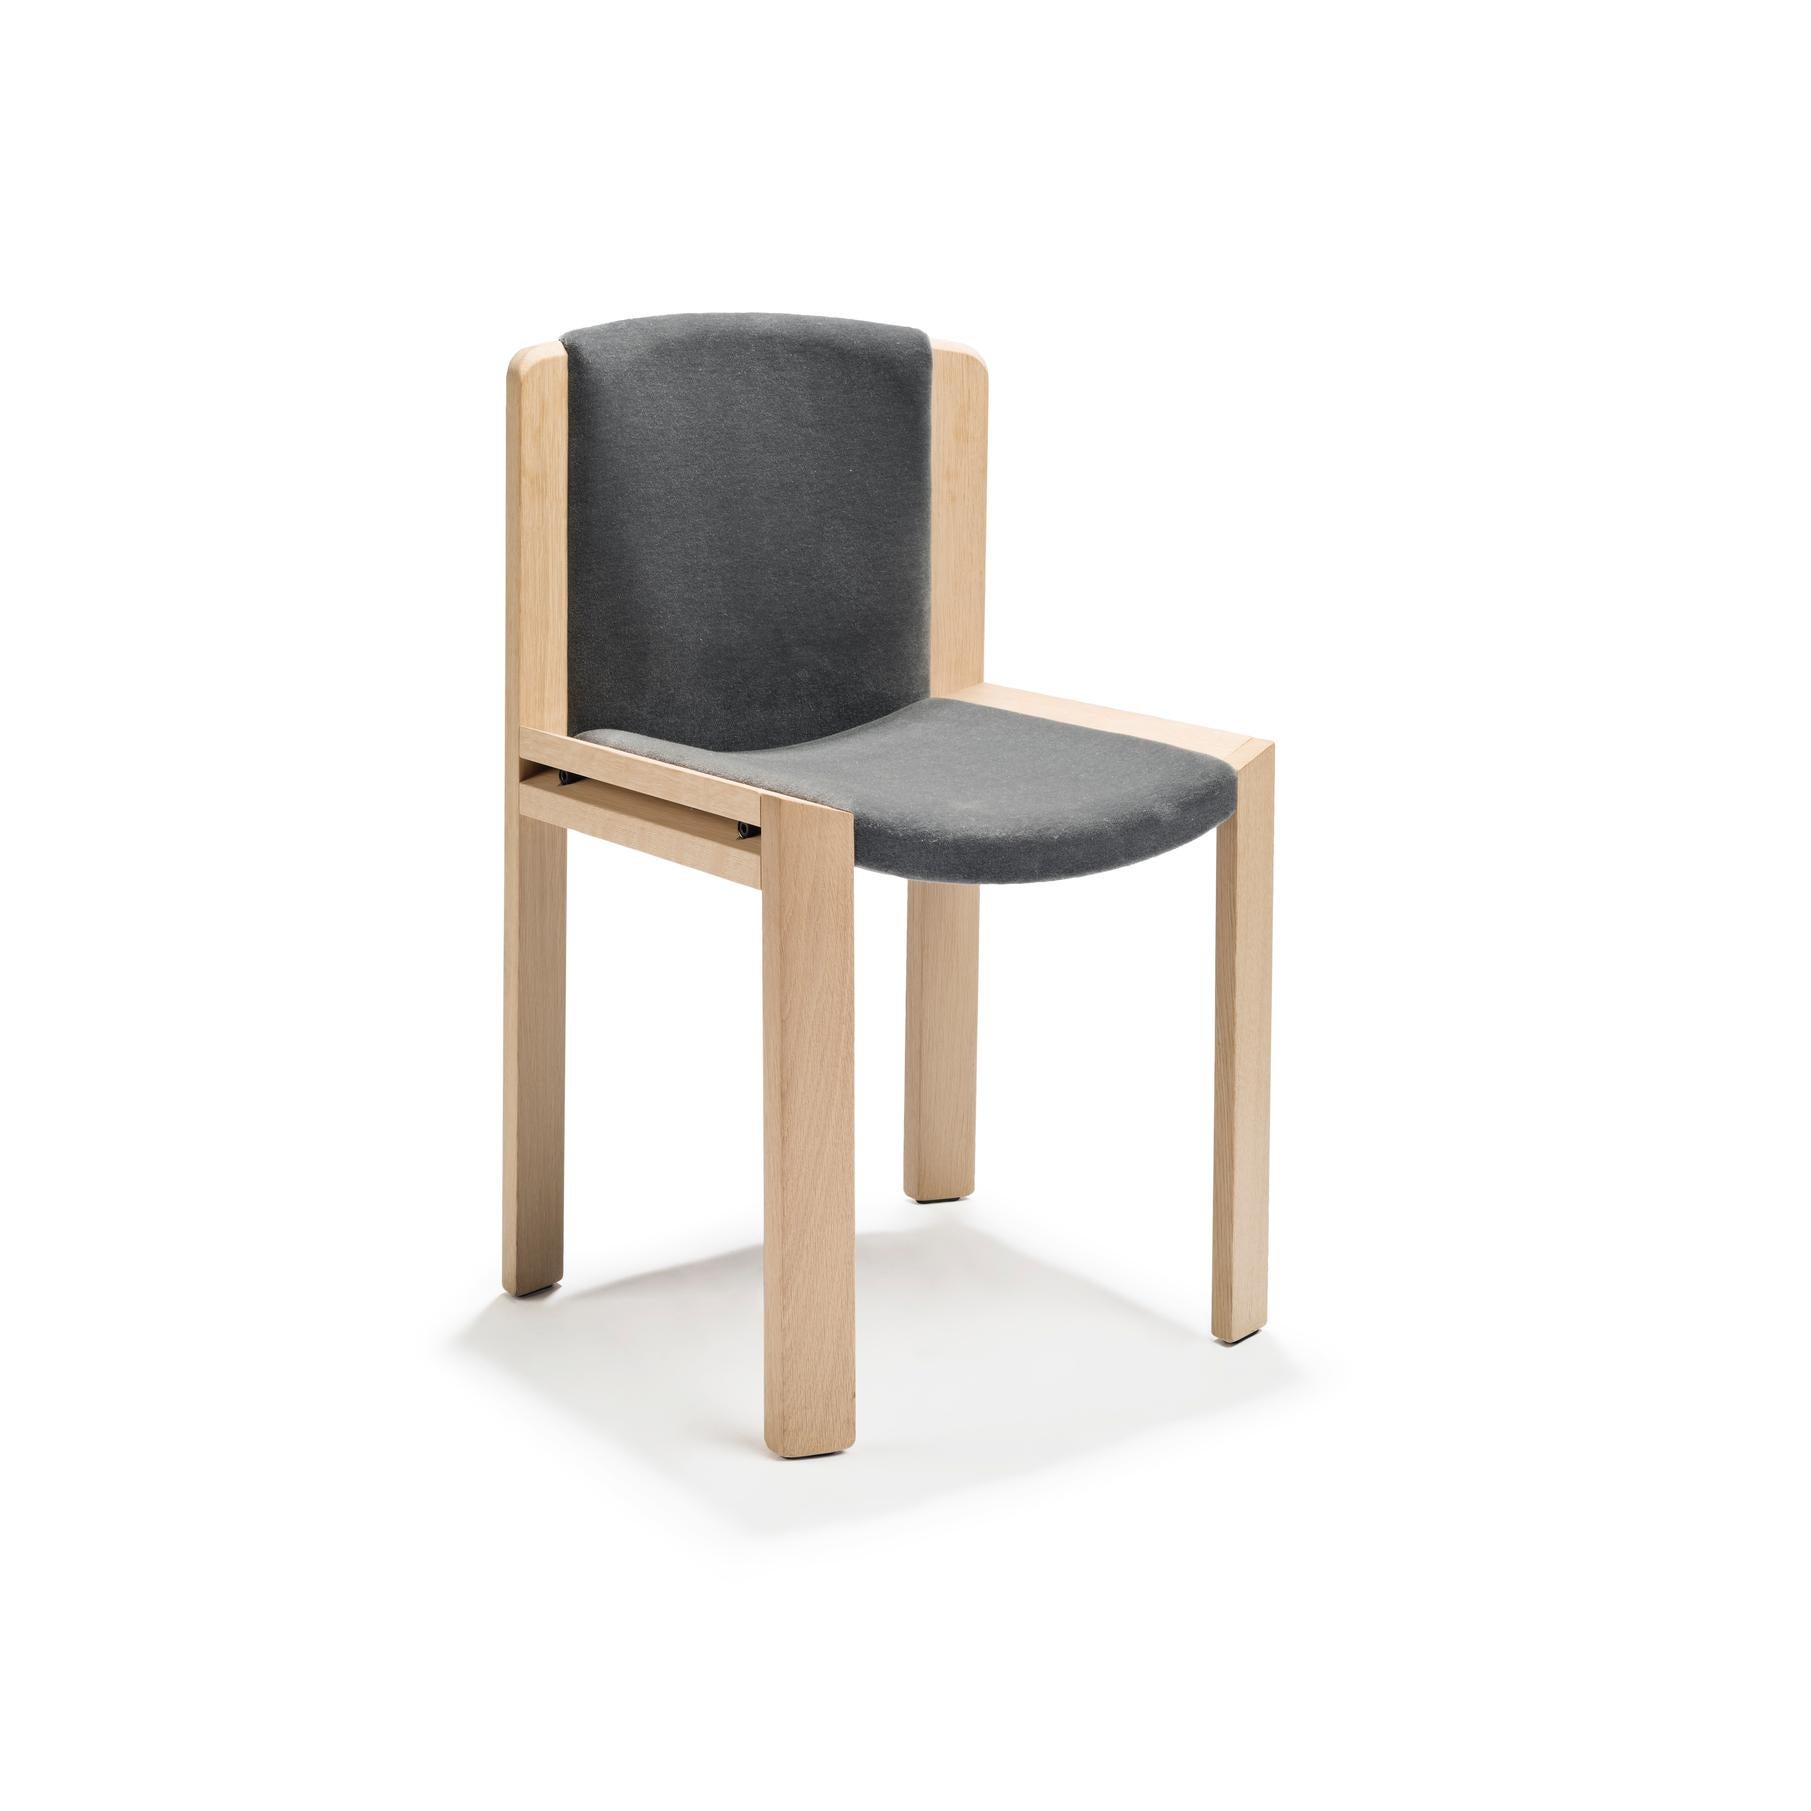 Chaise conçue par Joe Colombo en 1965. 

Conçue par le designer italien avant-gardiste Joe Colombo, la chaise 300 est un bel exemple de sa sensibilité en matière de design fonctionnel. L'assise et le dossier rembourrés, doucement courbés à